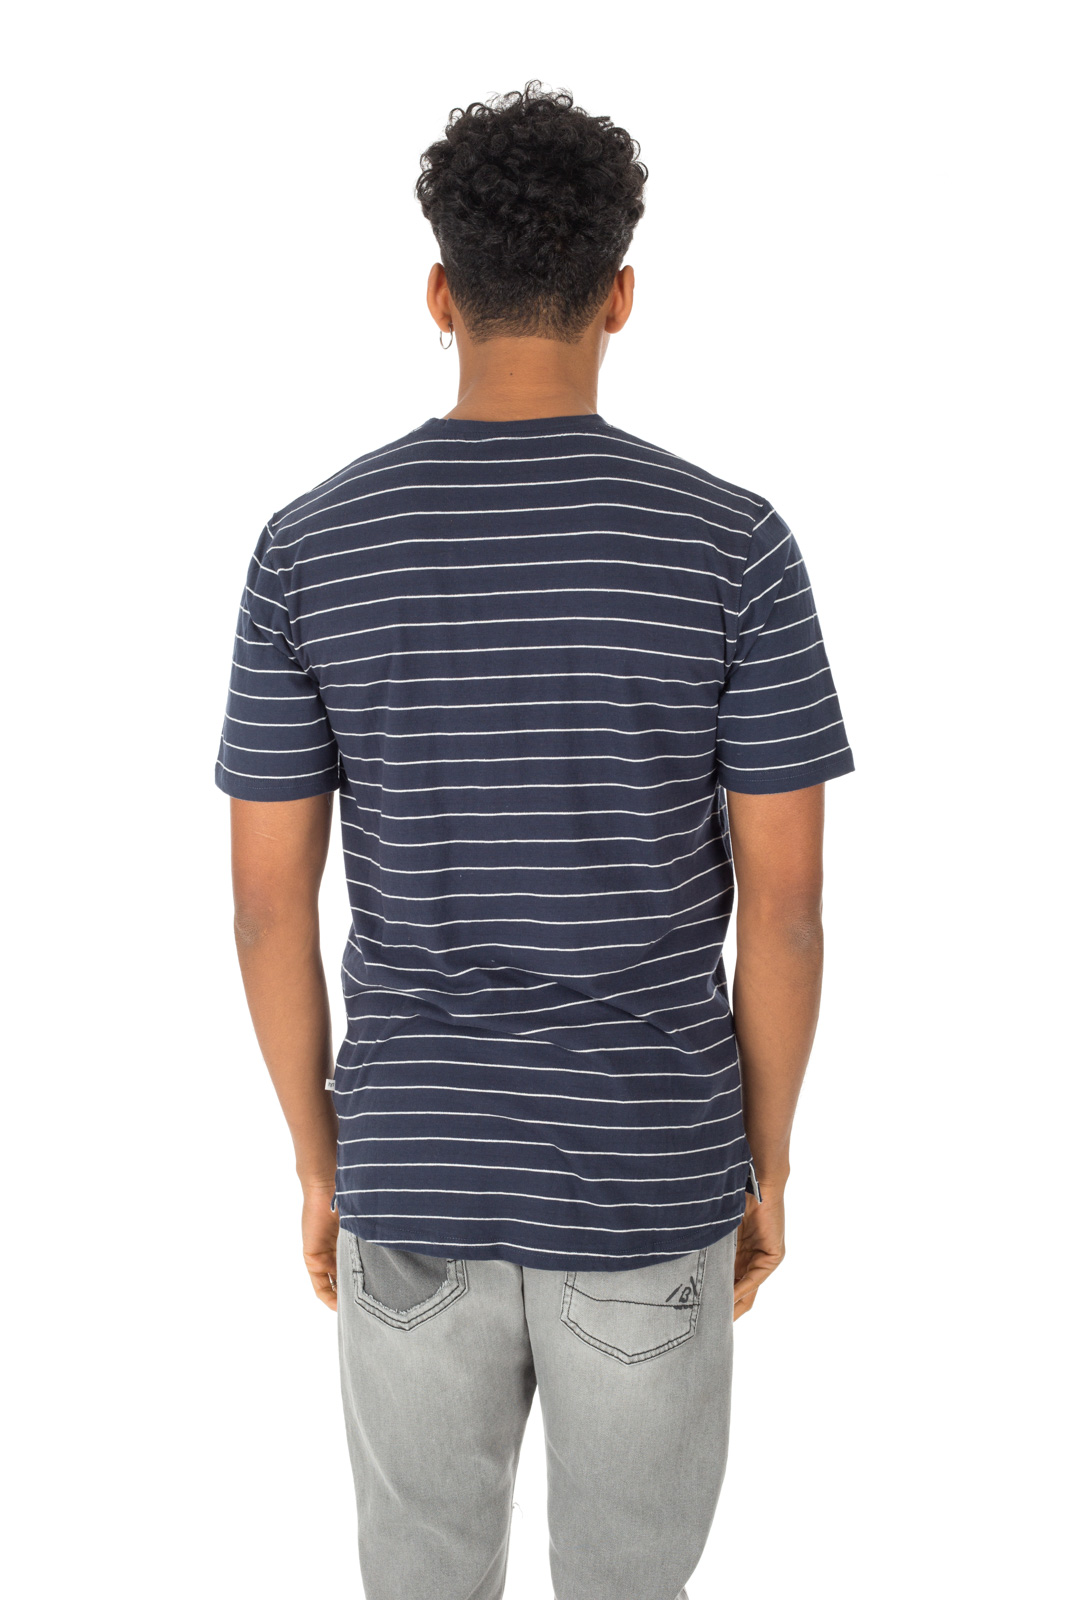 Minimum - T shirt Tatipu a righe blu/bianca